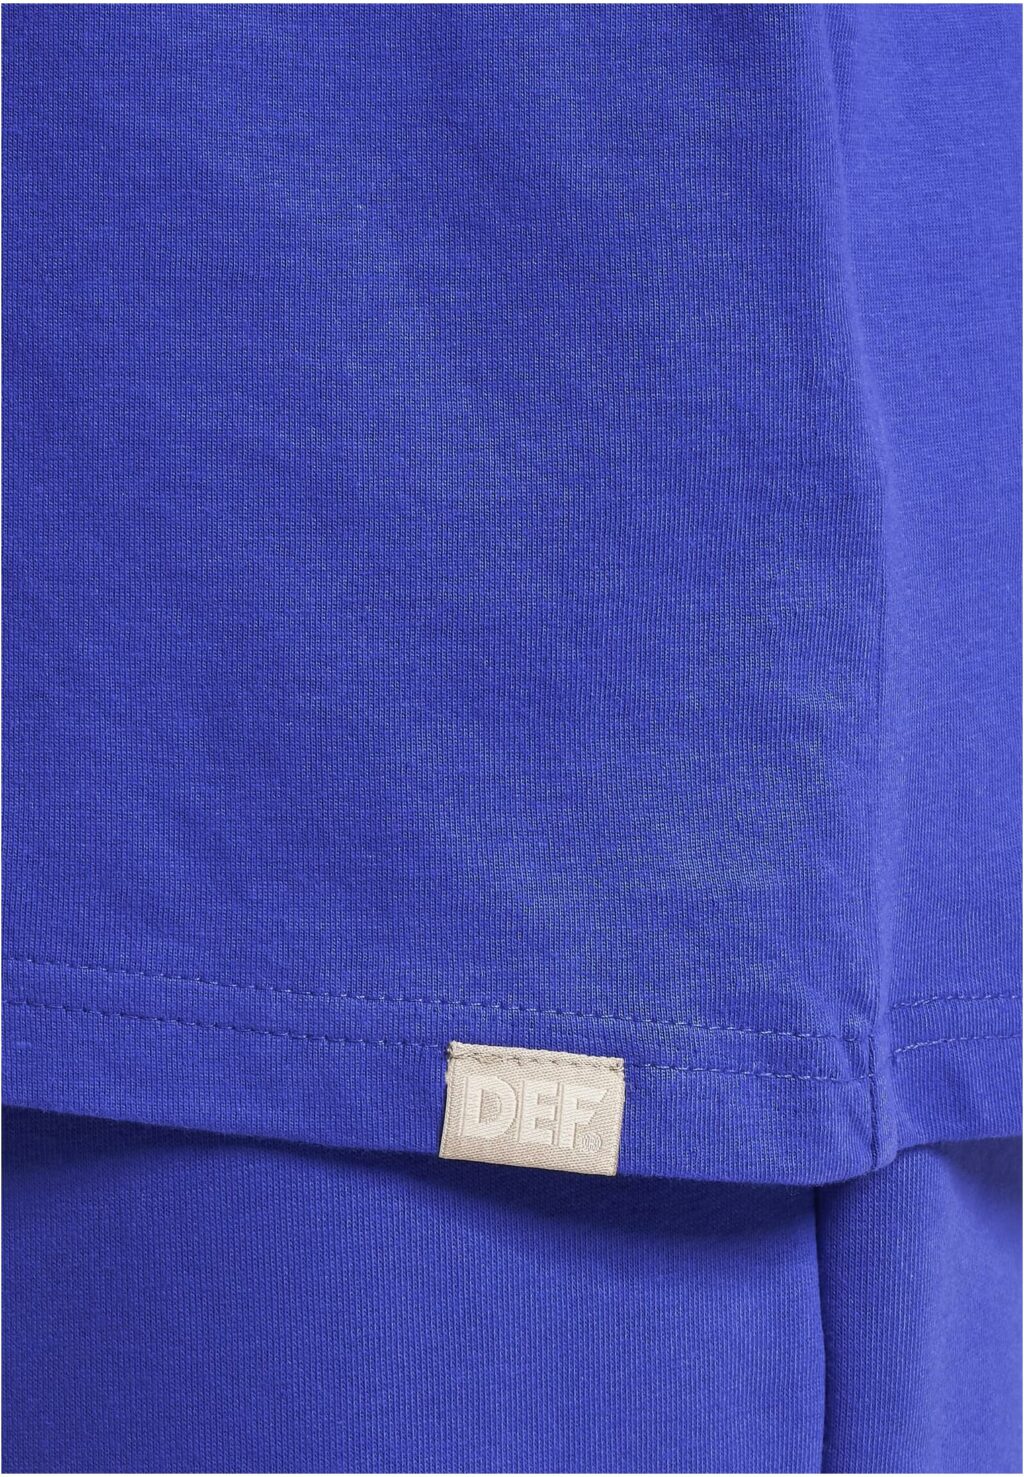 DEF T-Shirt cobalt blue DFTS228